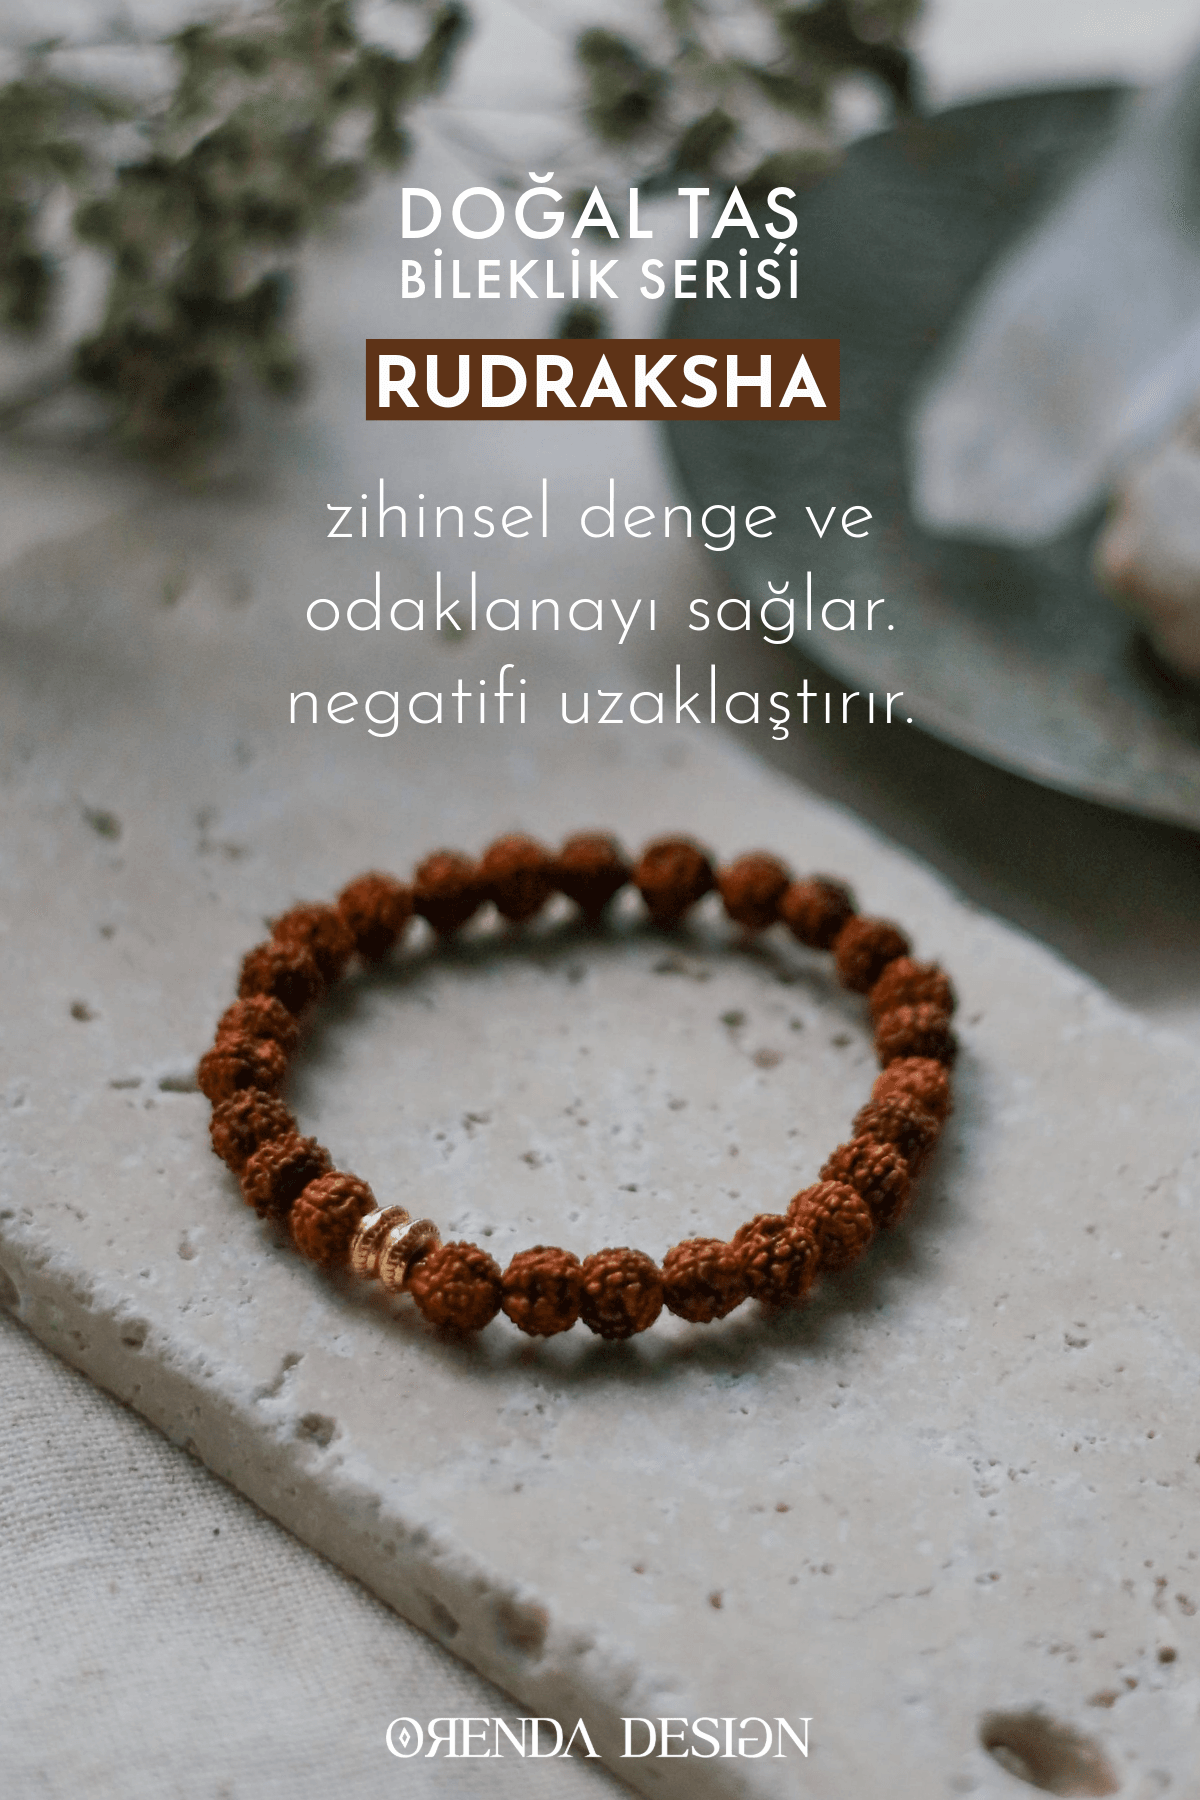 Rudraksha Doğal Taş Bileklik (Zihinsel Dengenin Anahtarı)